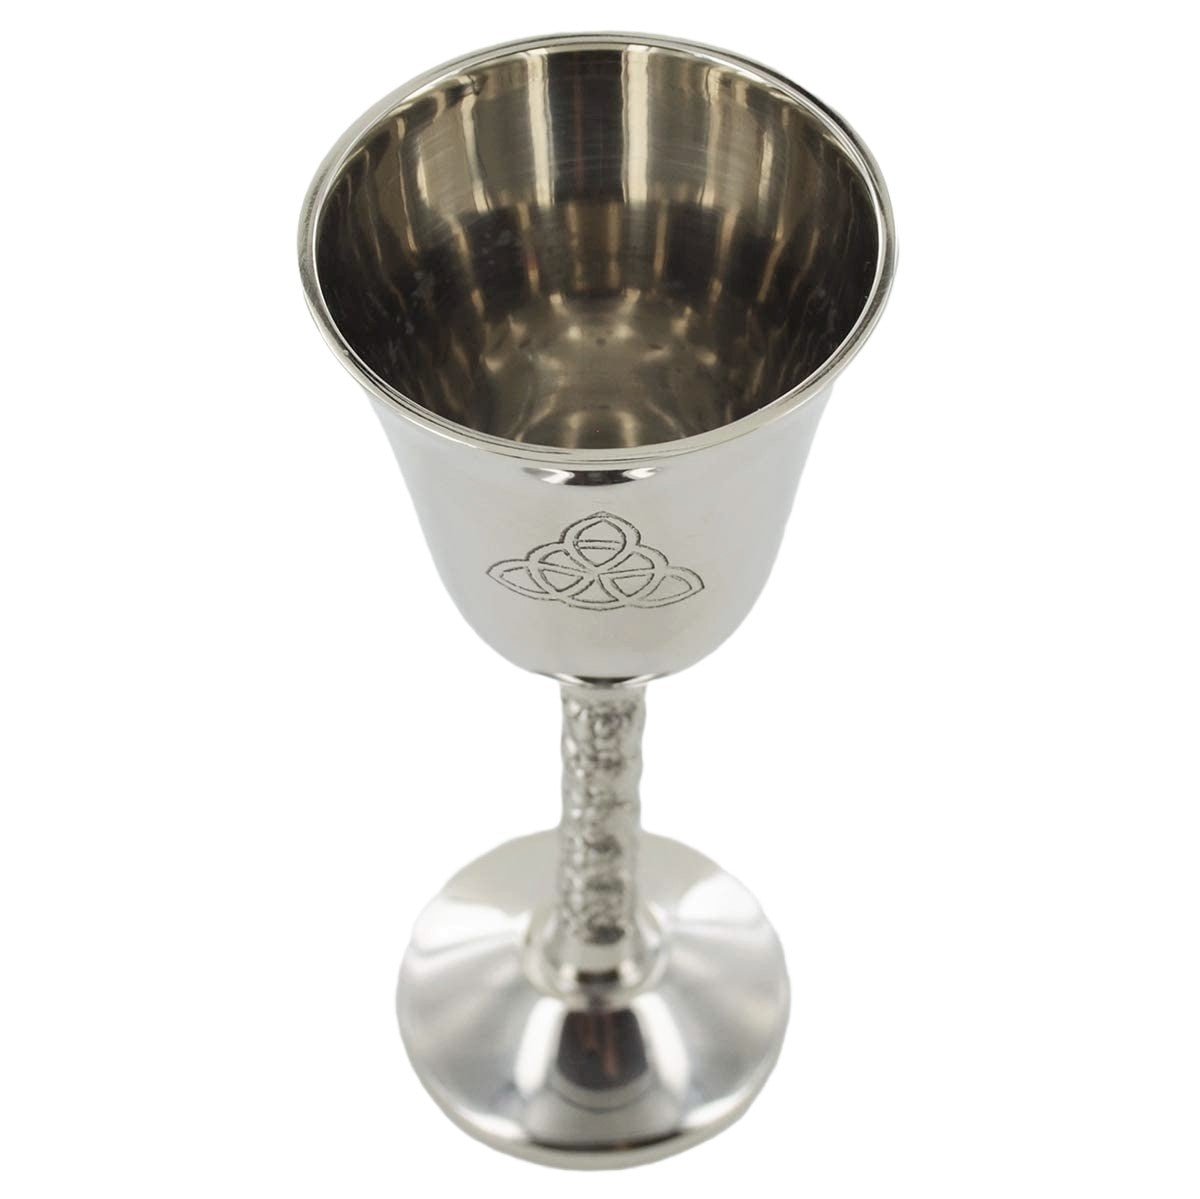 Nickel Goblet Cup Triquetra Symbol